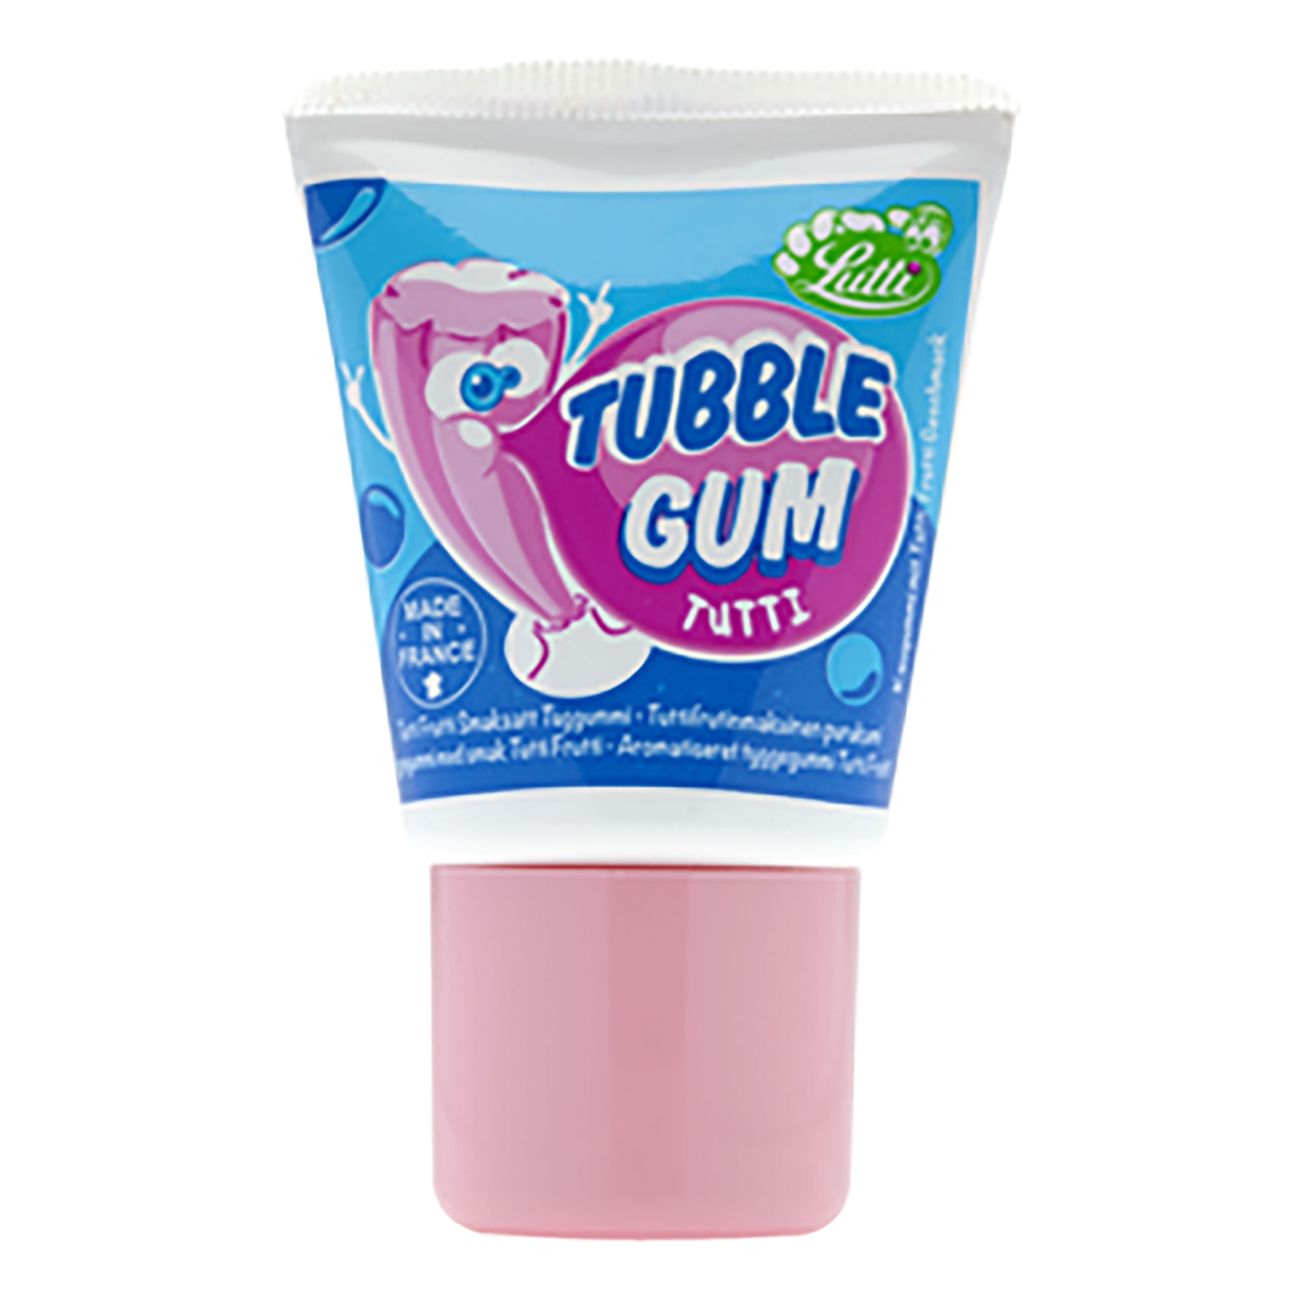 tubble-gum-tutti-35g-86474-1